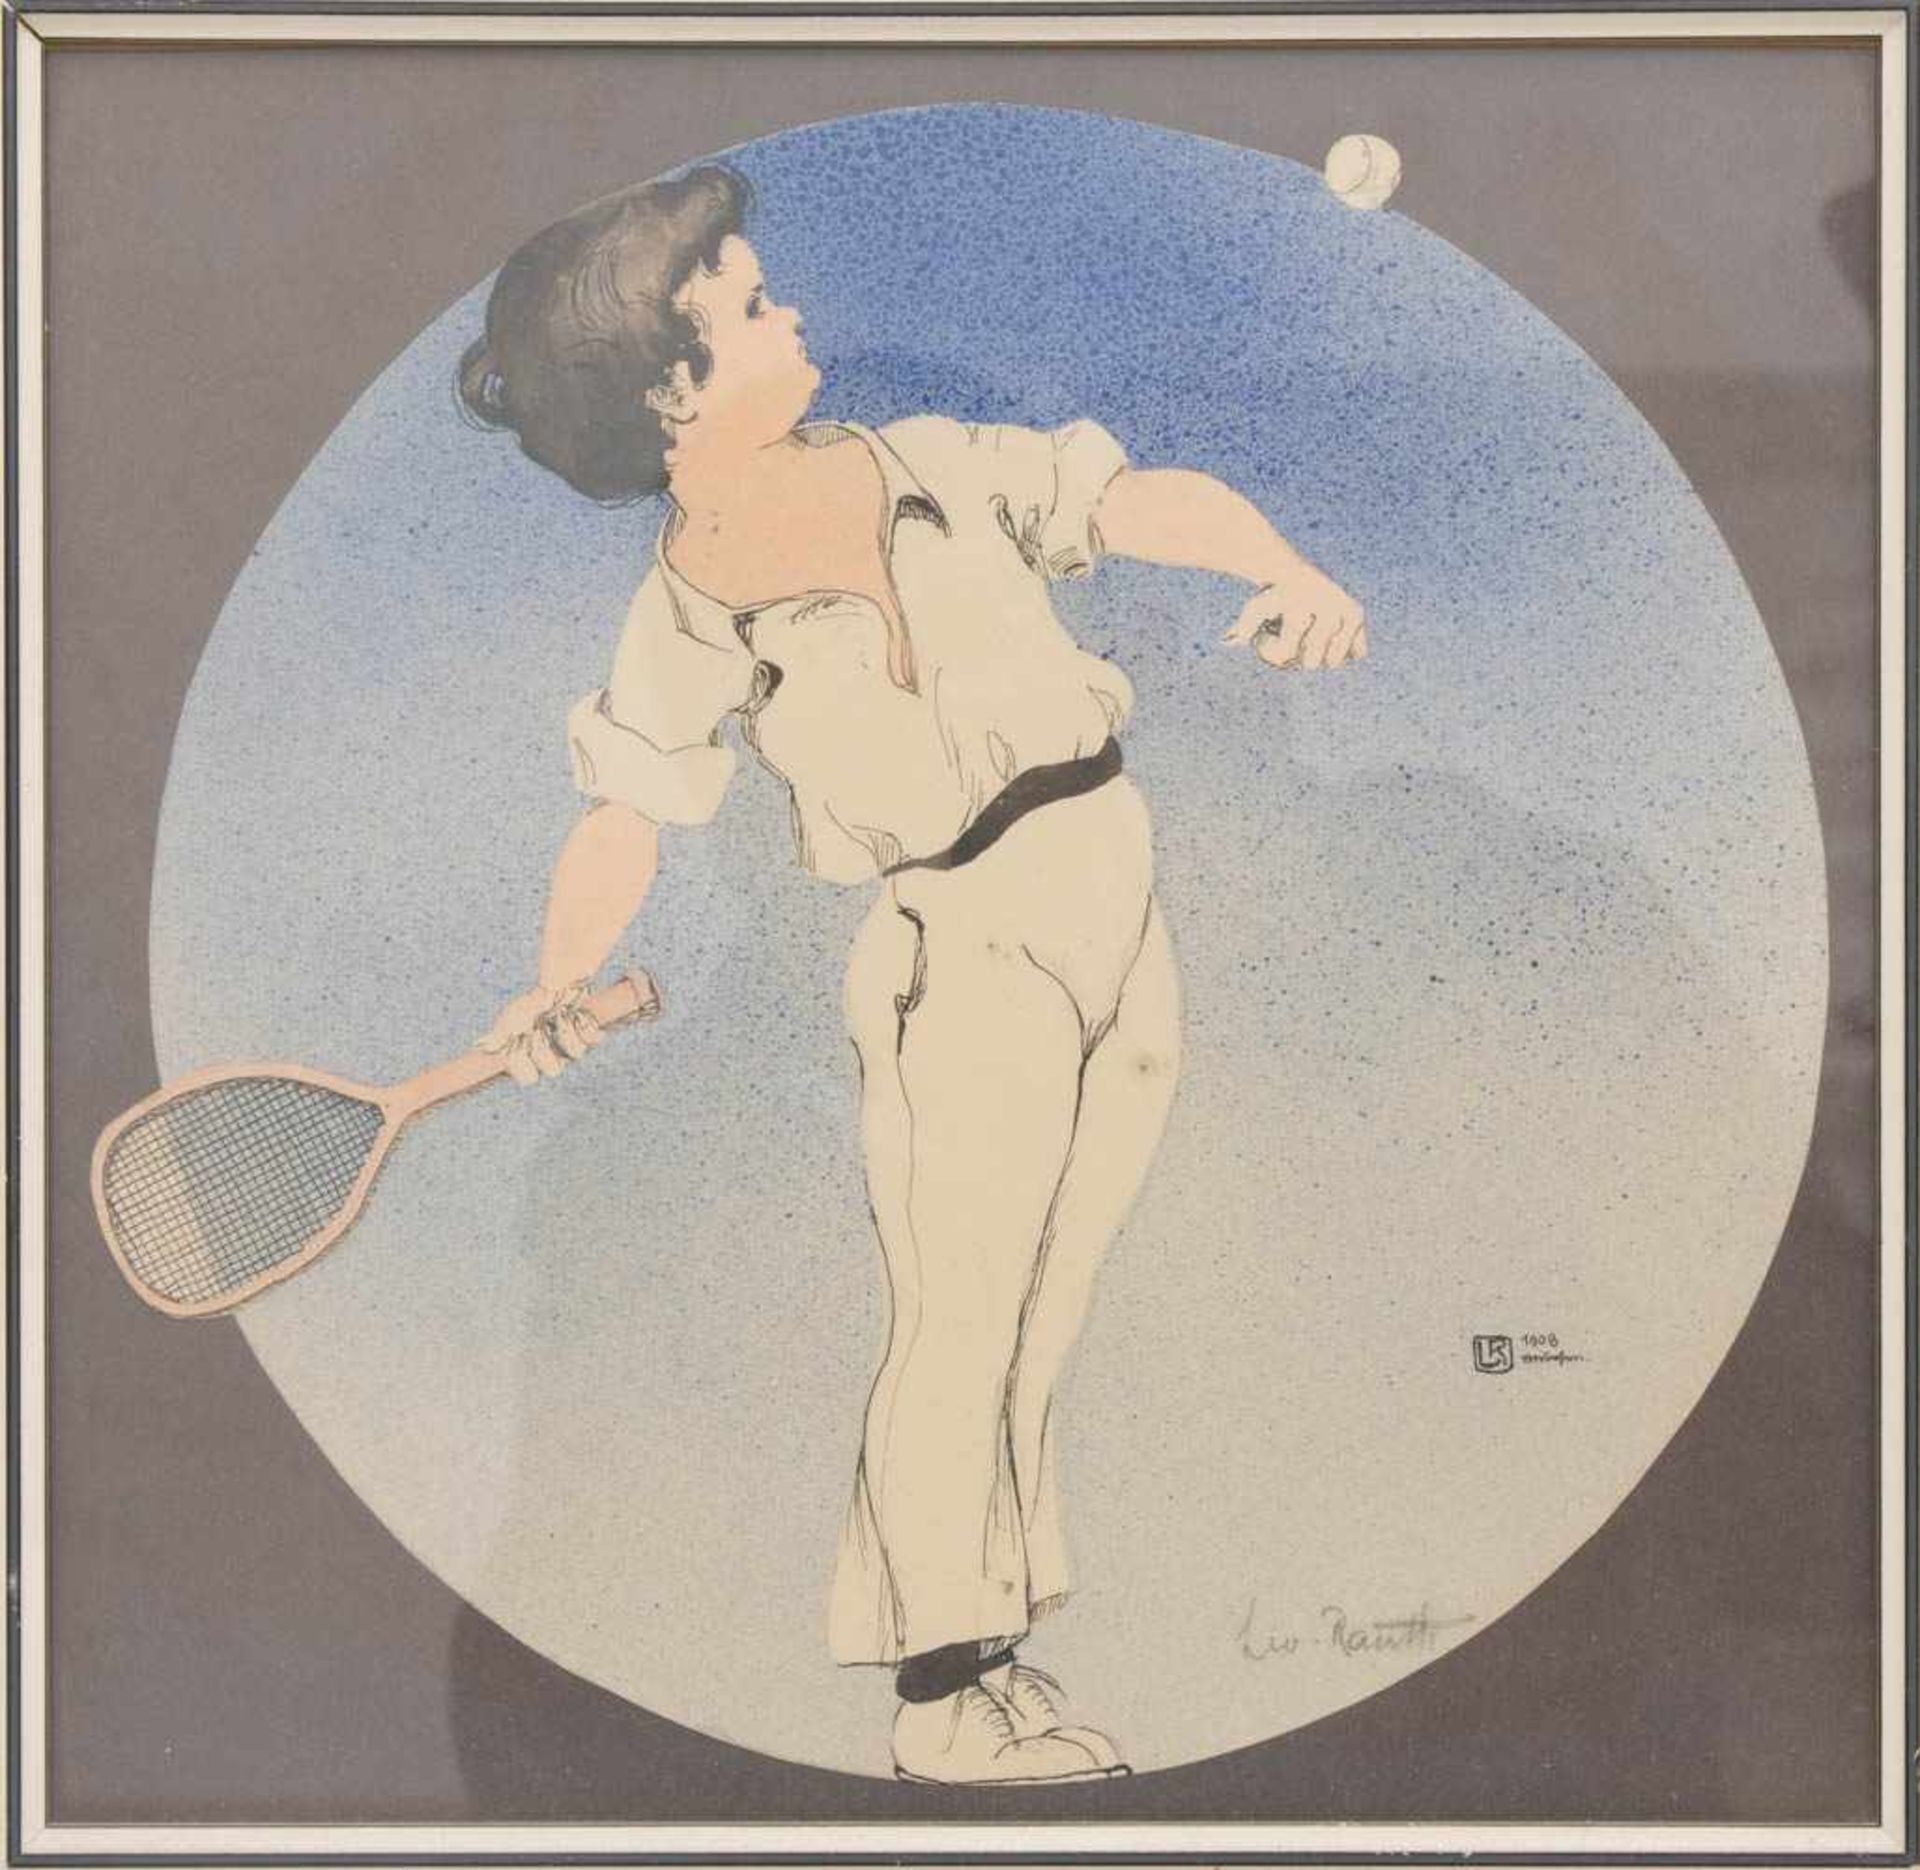 LEO RAUTH, Tennisspieler, Tusche auf Papier, Deutschland, 1908.Leo Rauth (1884-1913), Das Rund